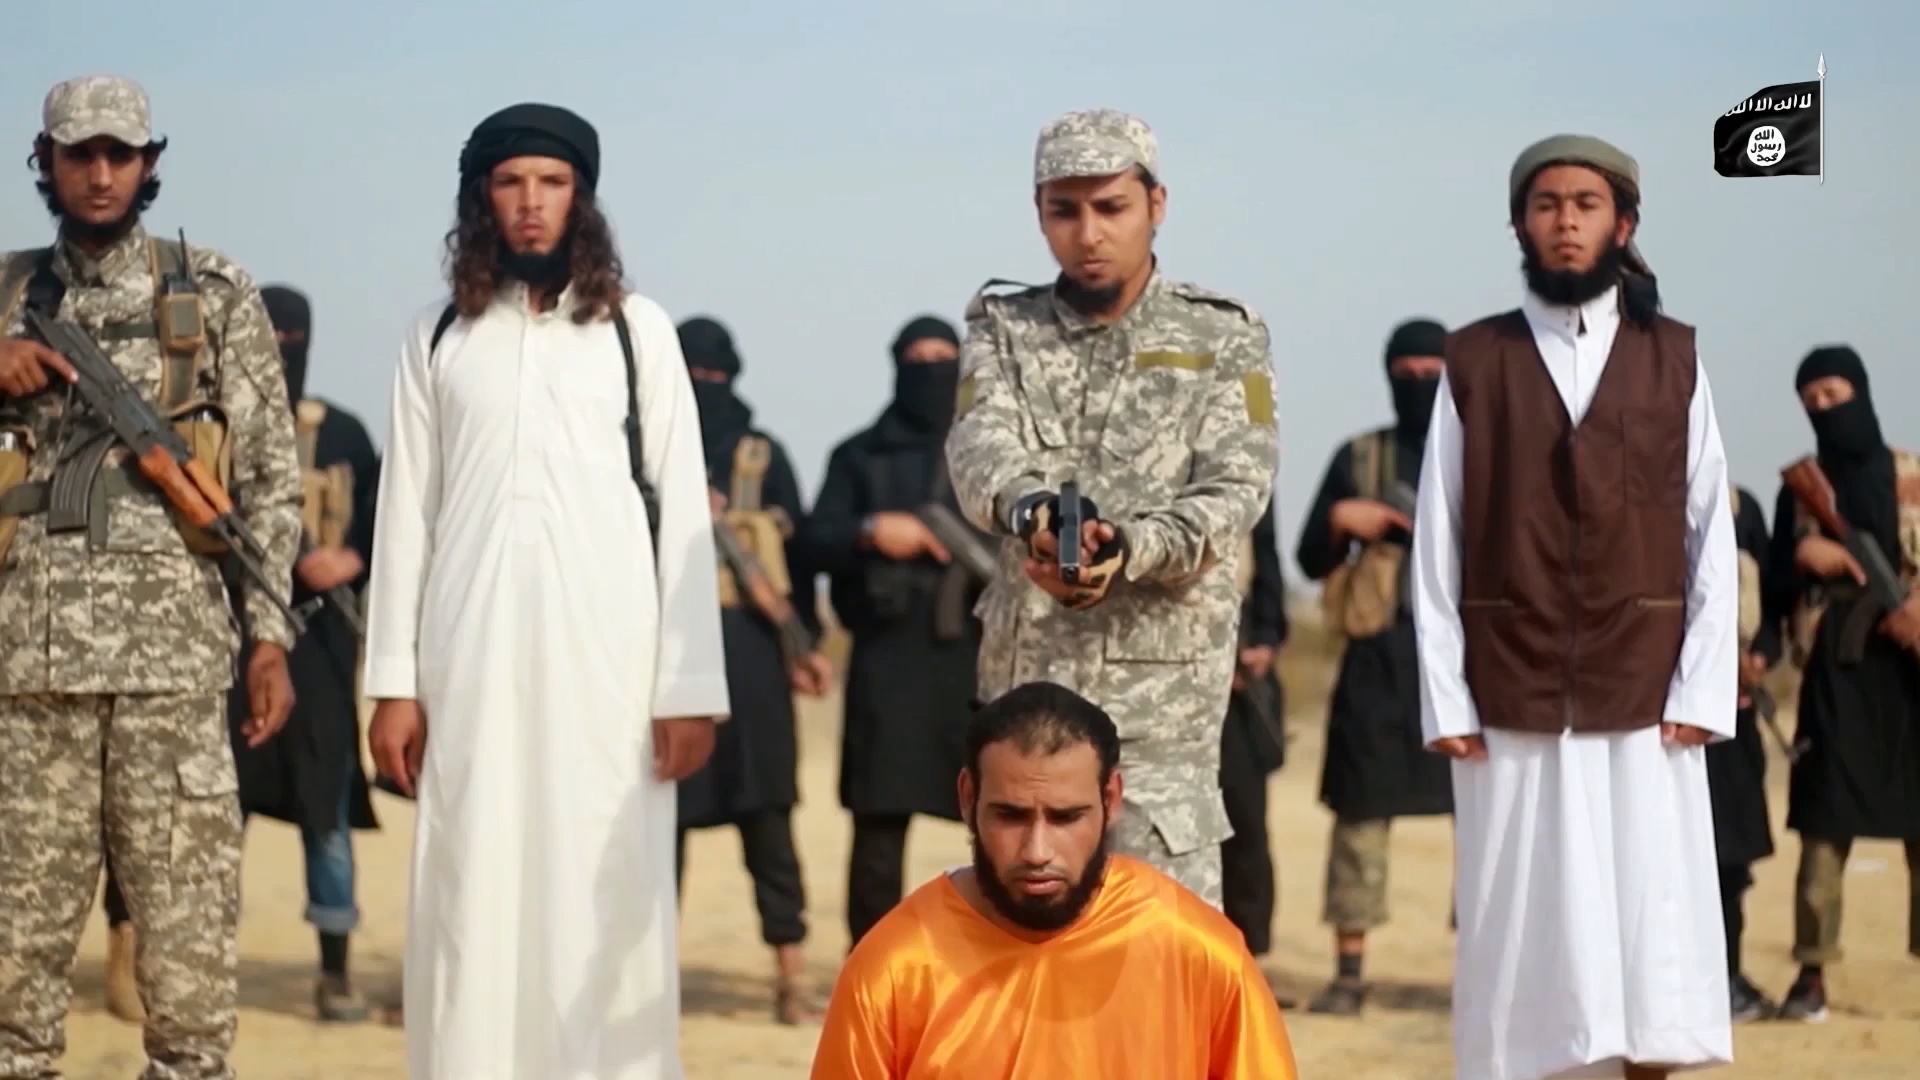 Видео игил о теракте в крокусе. Абу Мухаммад Аль Макдиси. Вилаят Синай группировка. Синайский полуостров ИГИЛ.